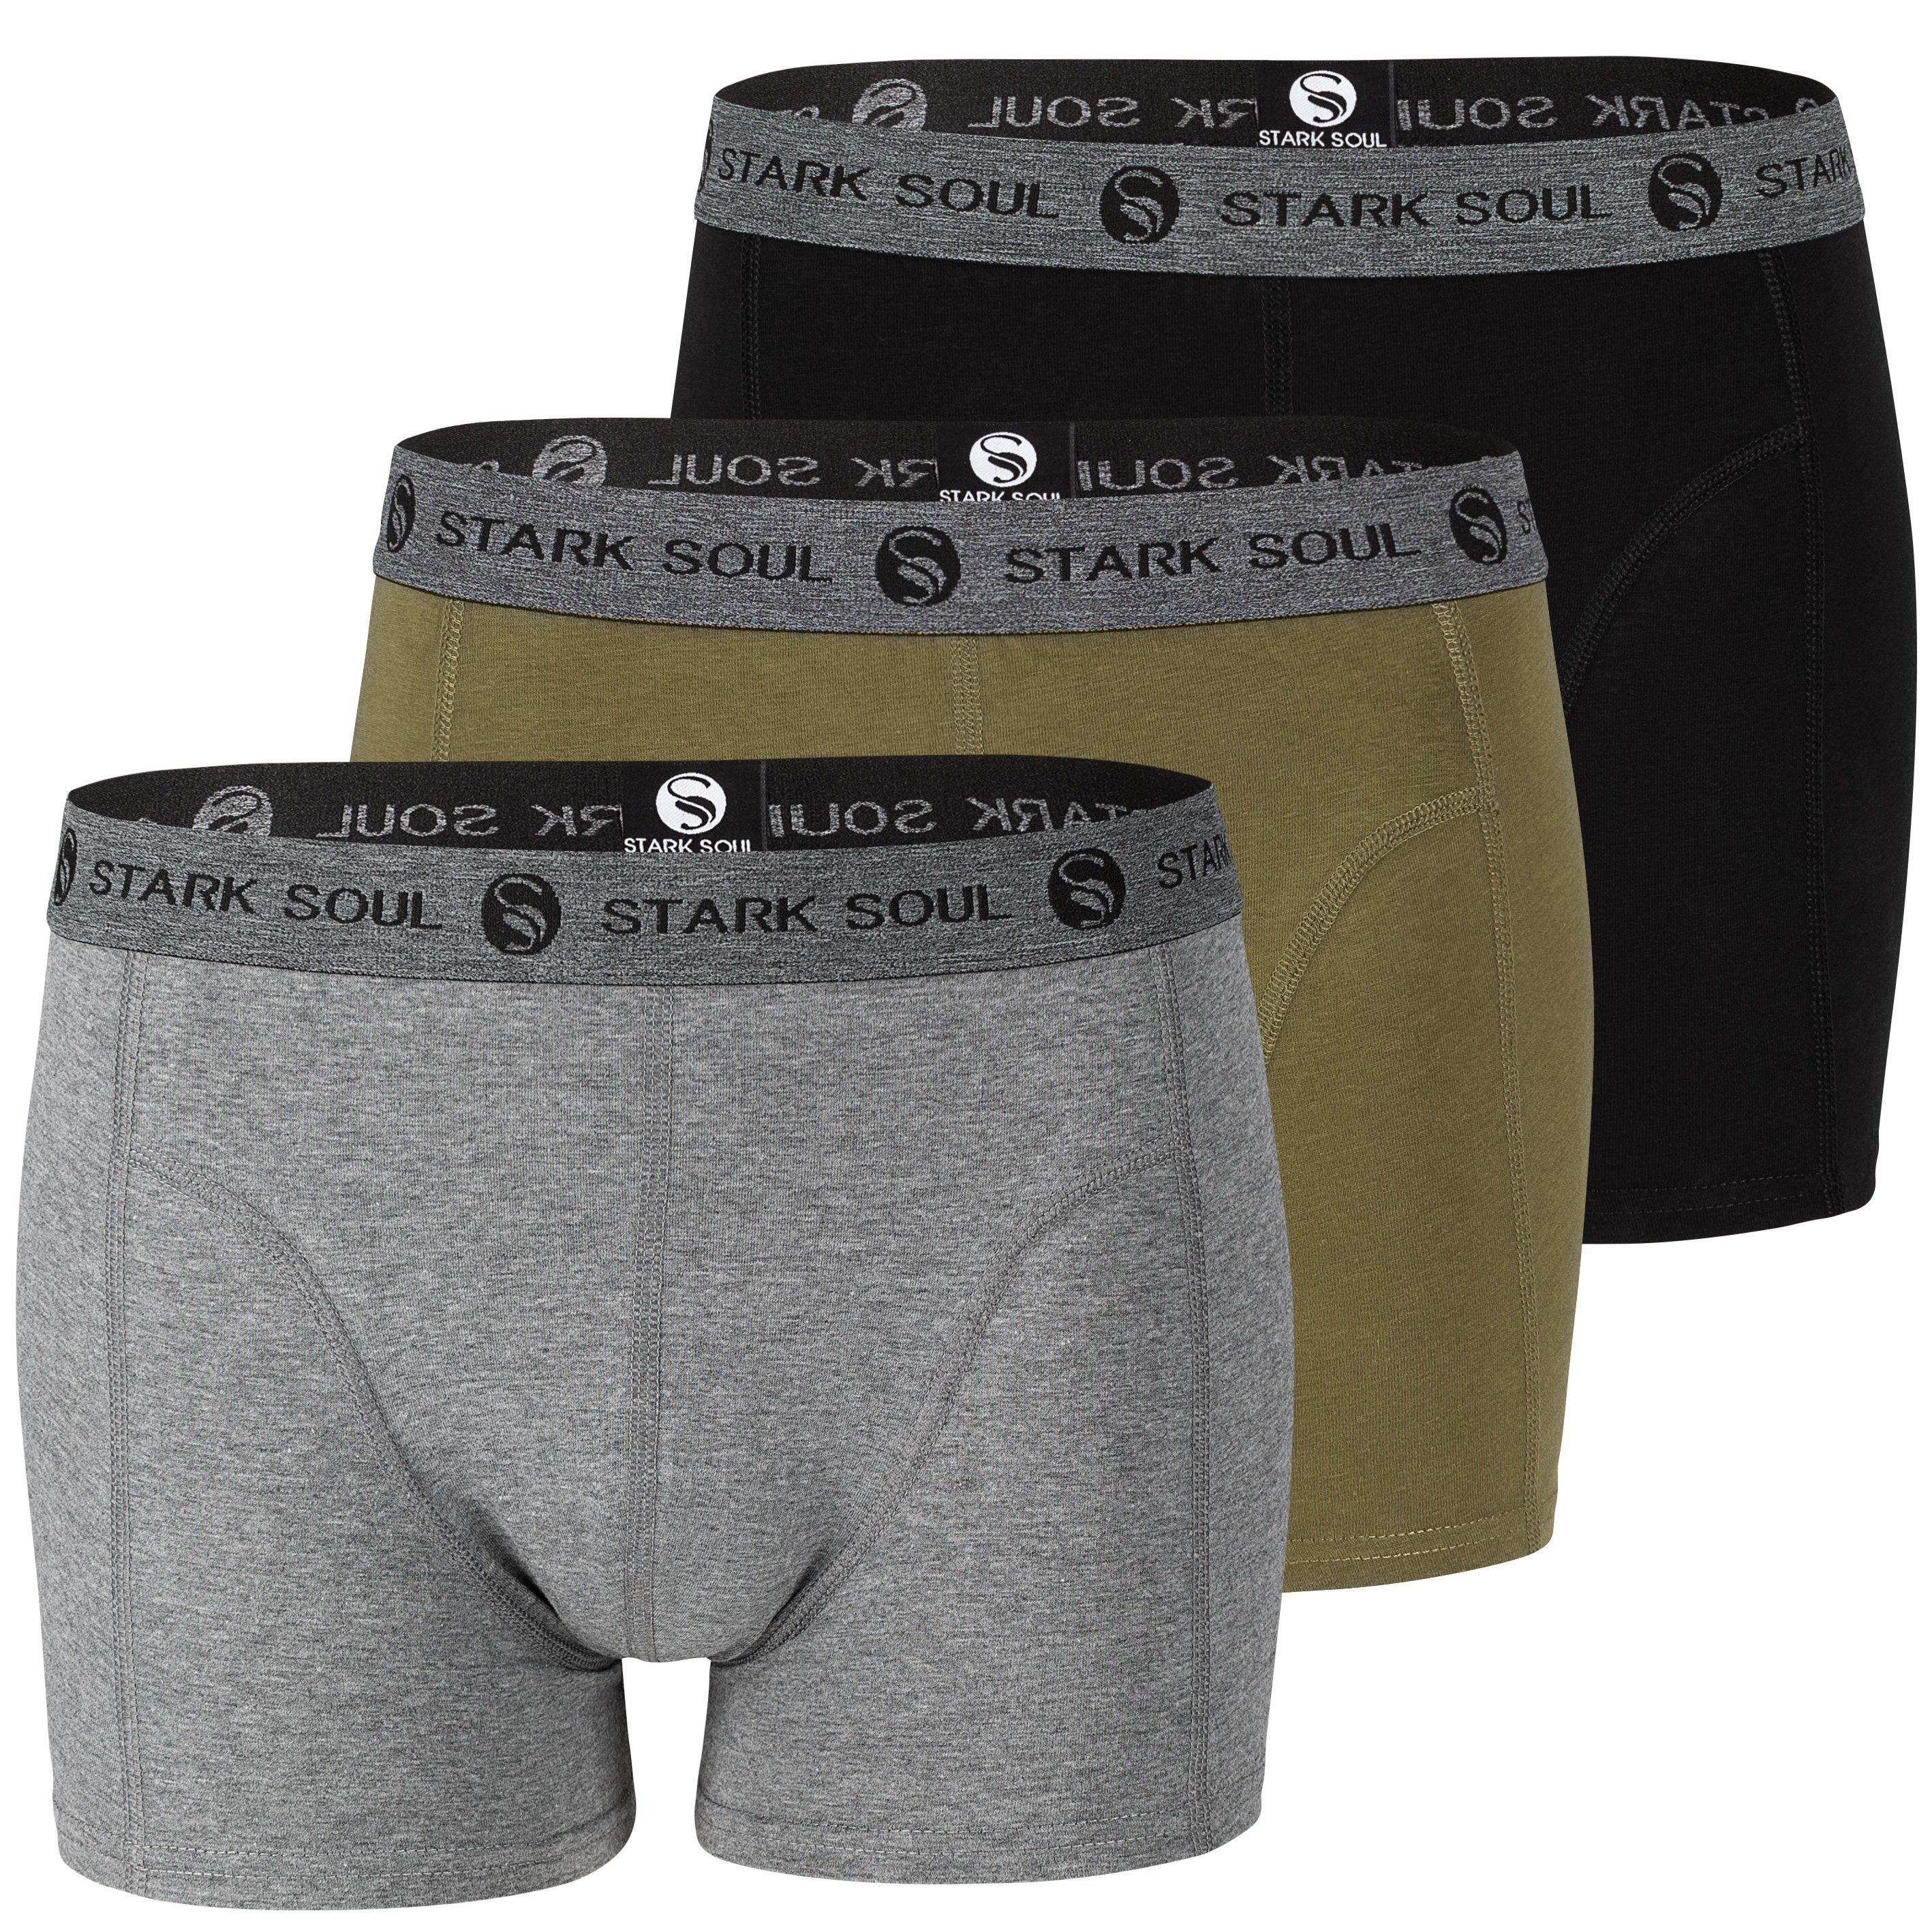 Stark Soul® Boxershorts Herren Boxershorts, 3er Pack, Retroshorts, Trunks - weiche Baumwolle 3er-Pack Gemischt